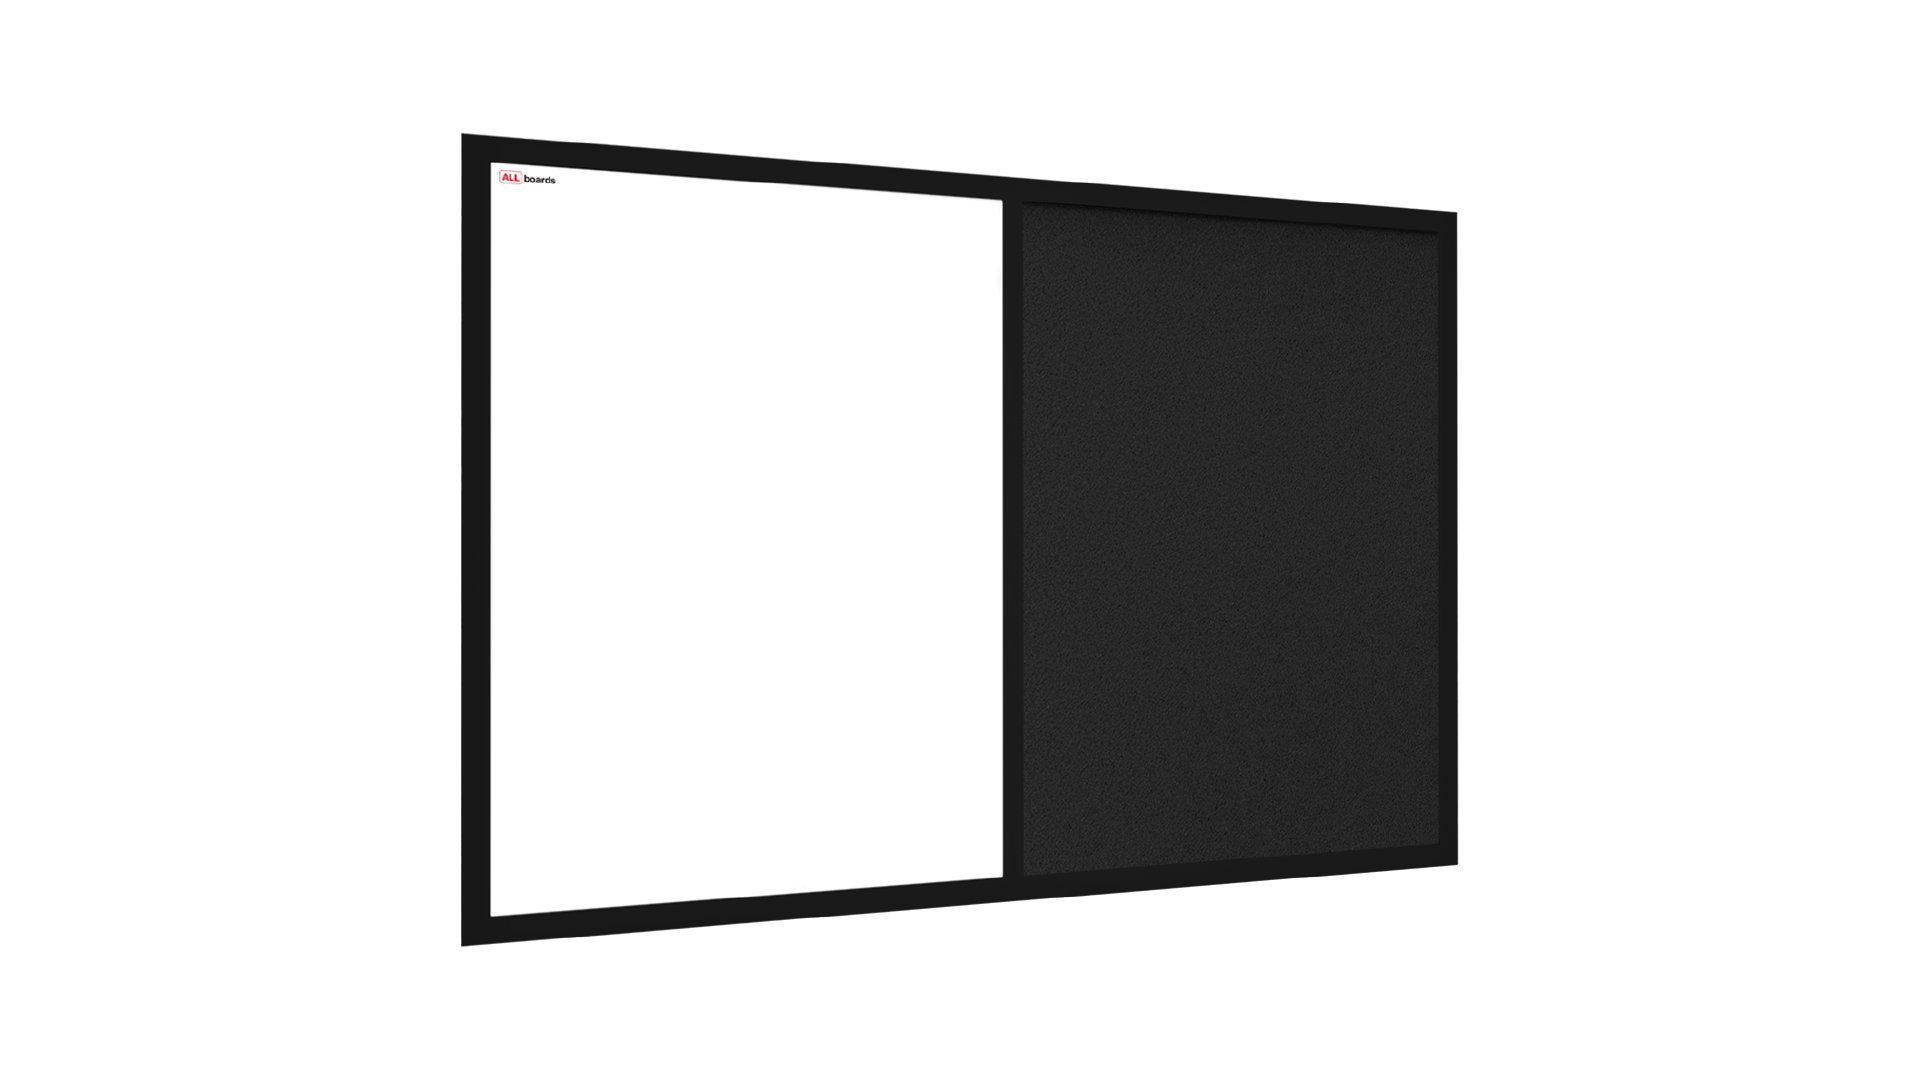 ALLboards Tafel Kombitafel 2 in 1 Whiteboard und Kork mit schwarz lackietem Holzrahmen